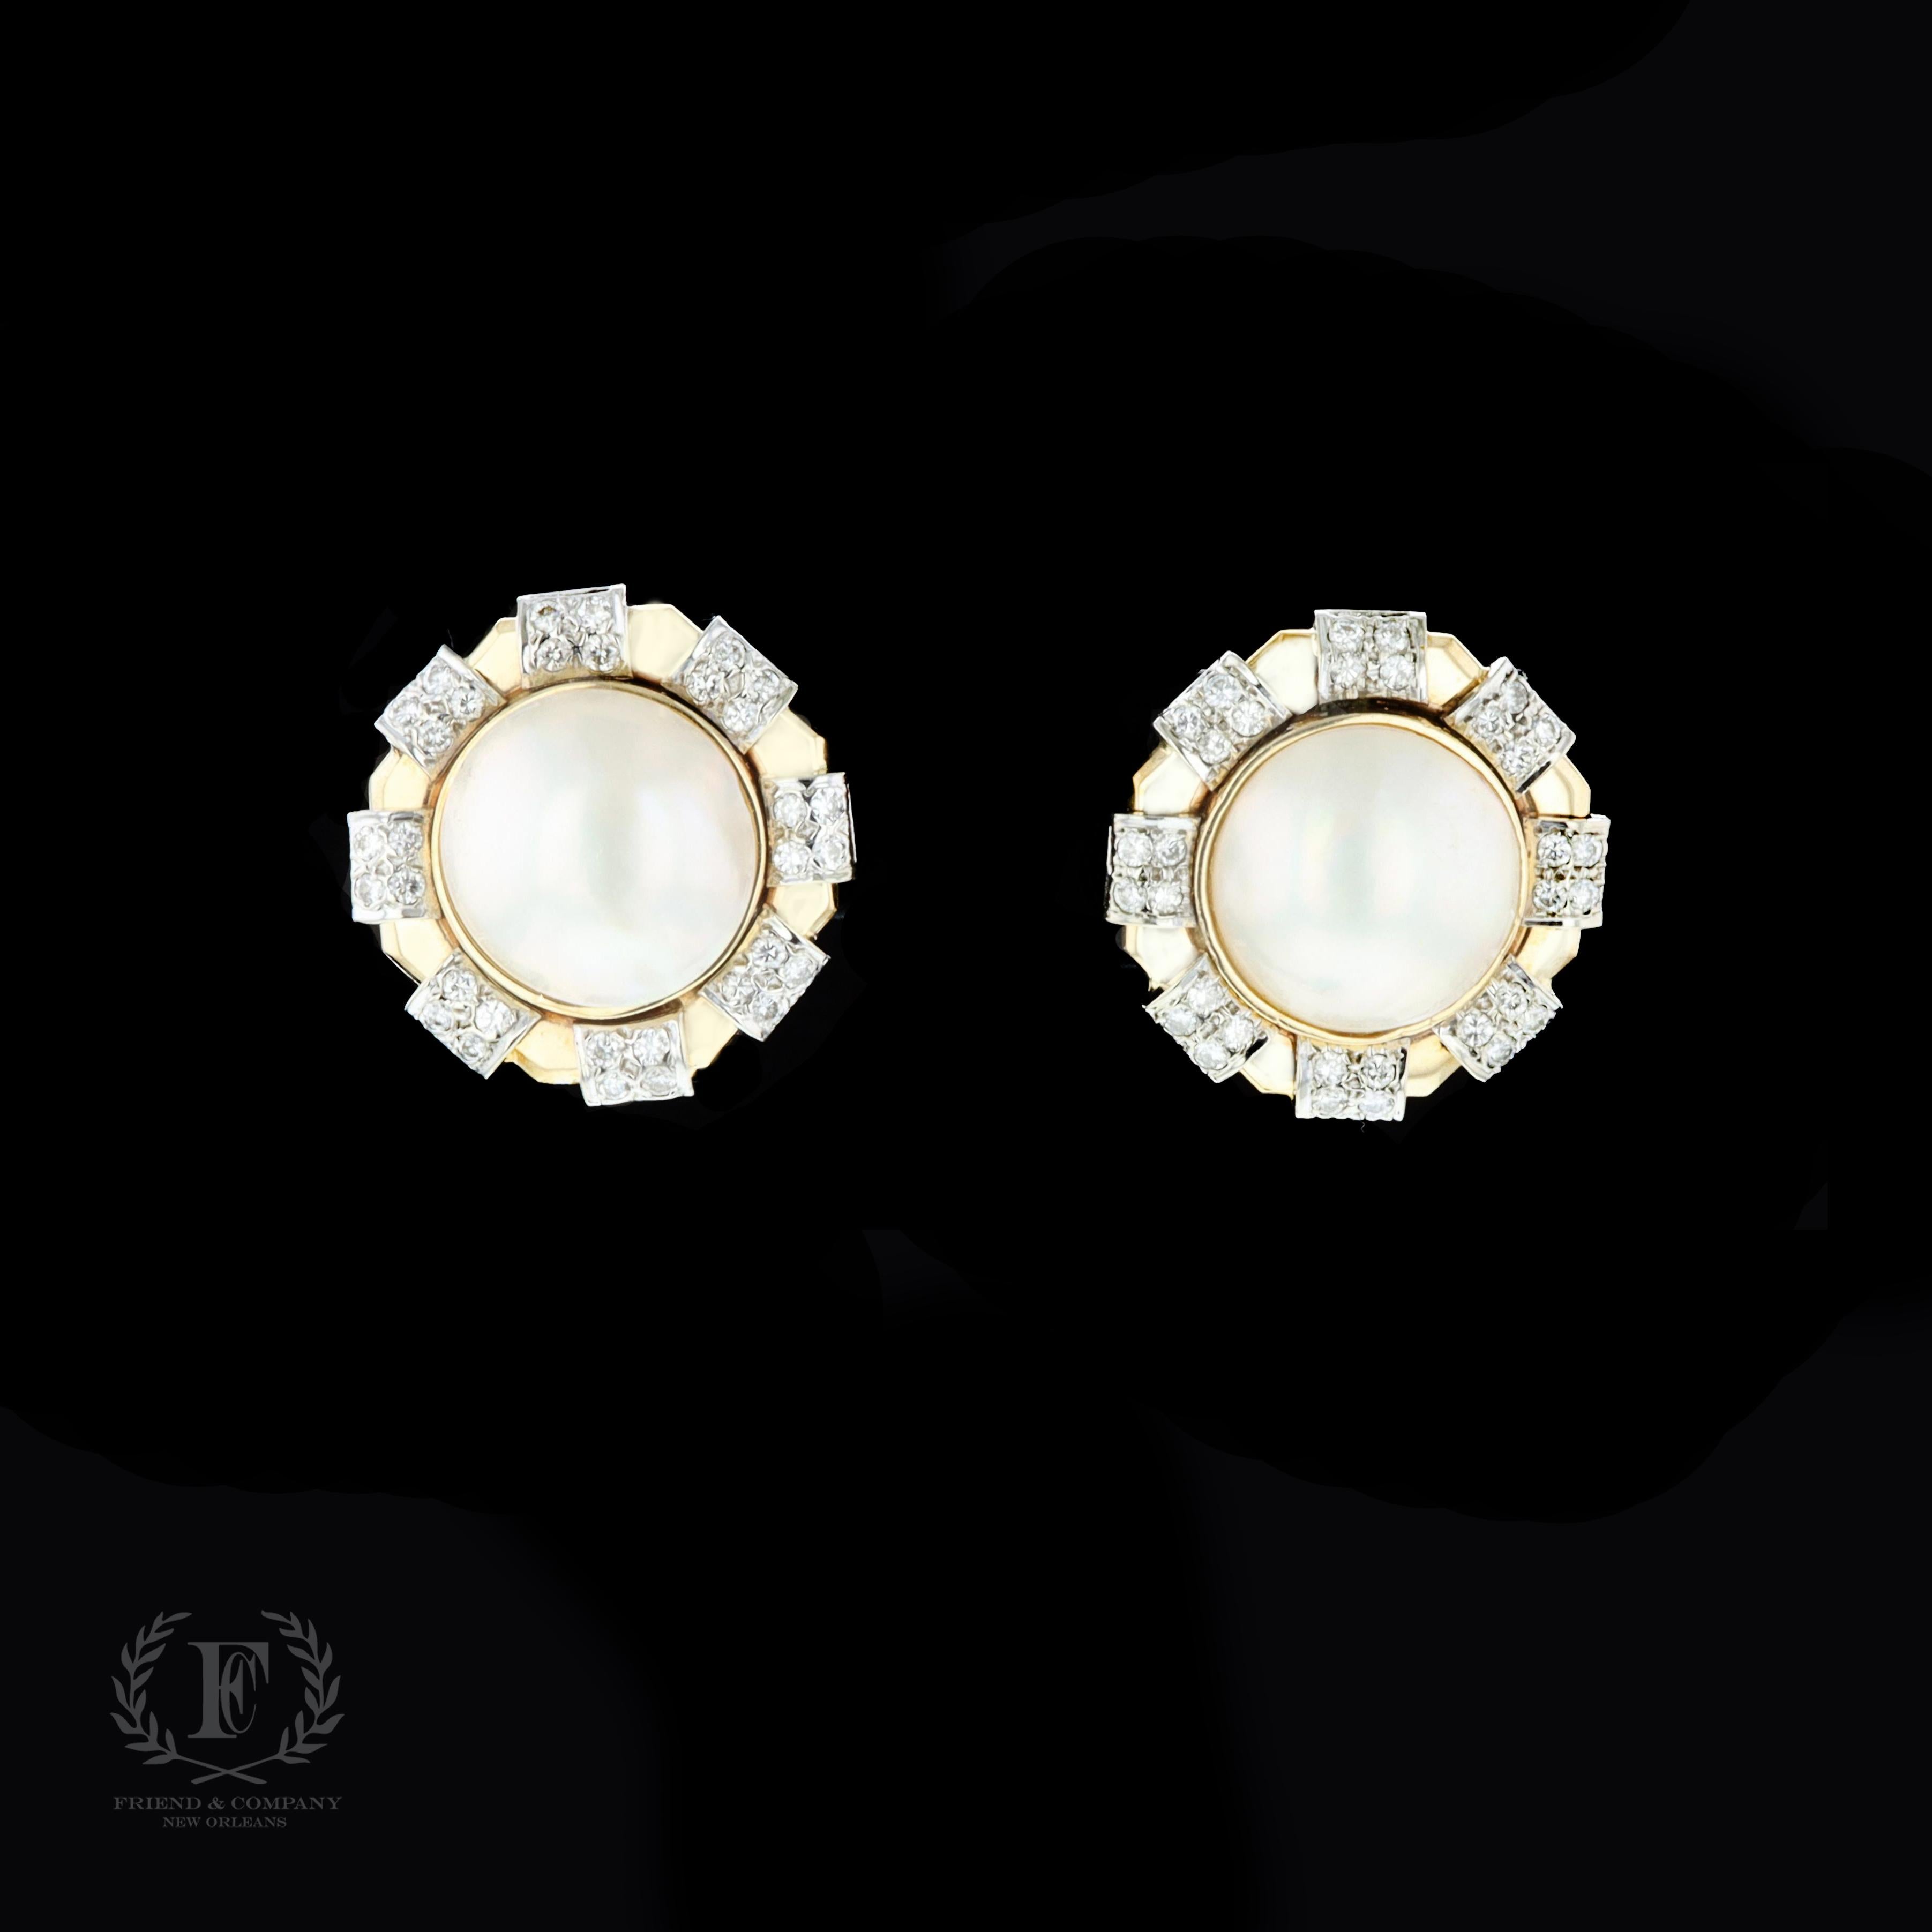 Ein klassisches und raffiniertes Paar Ohrringe aus 14 Karat Gelbgold mit Perlen und Diamanten. Die Ohrringe bestehen aus 2 runden cremefarbenen Mabe-Perlen von je 16 Millimetern. 64 Diamanten im Rundschliff funkeln in diesem spektakulären Paar